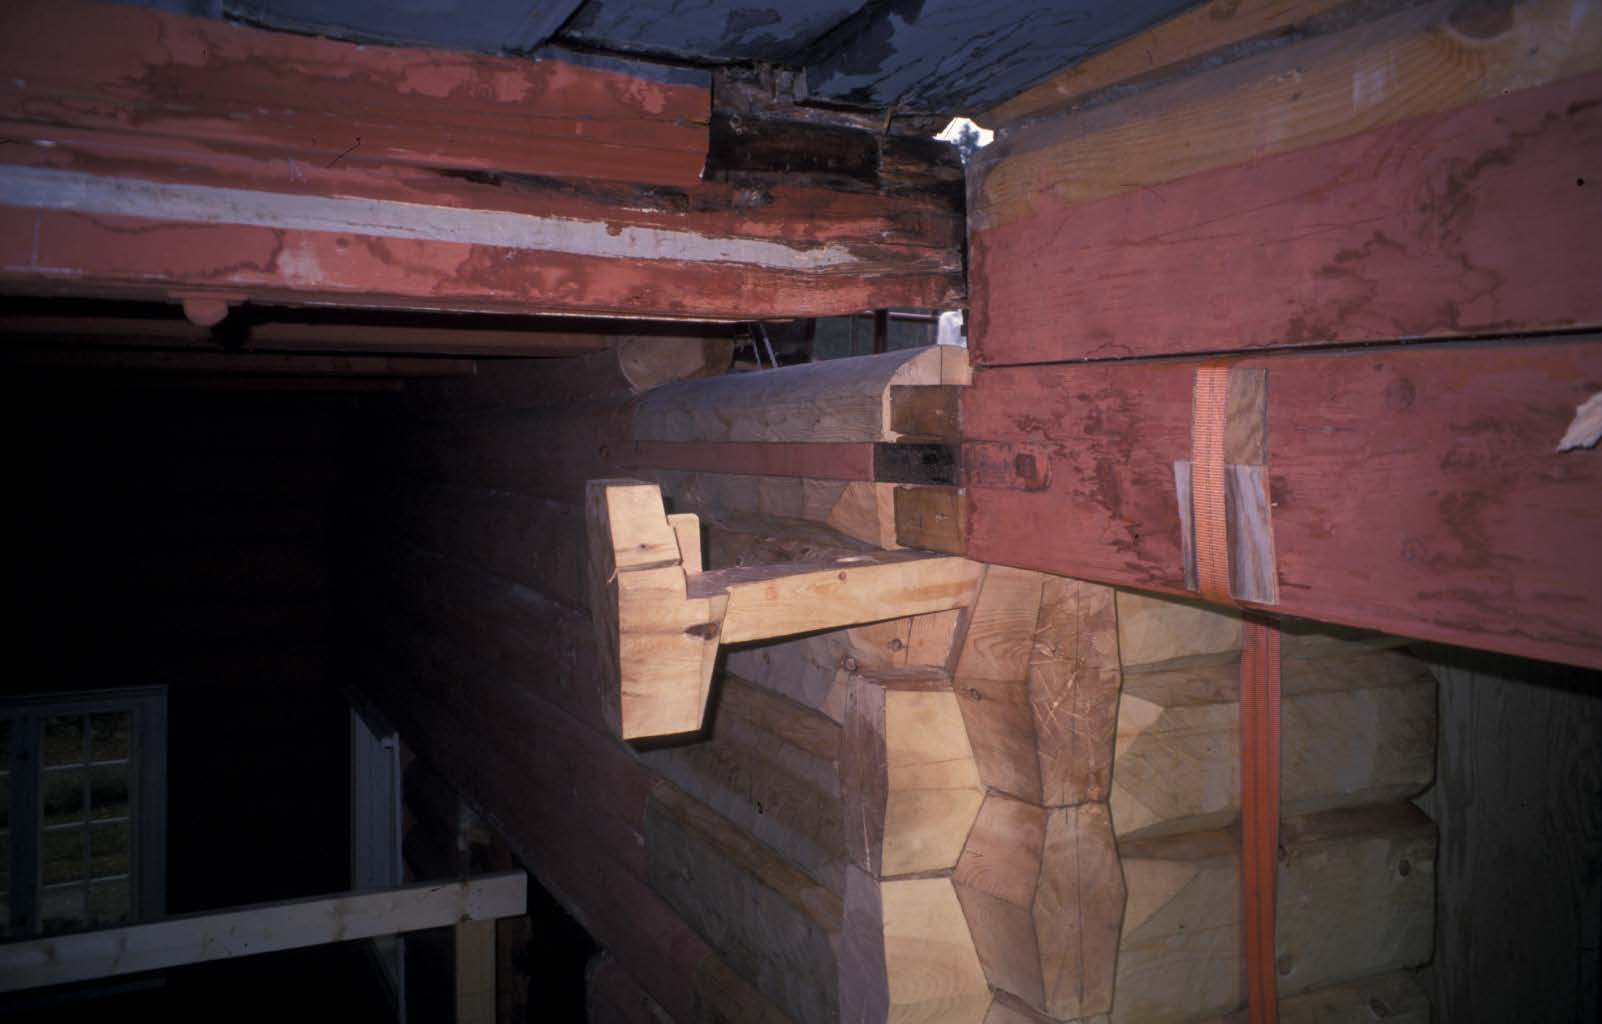 Novhovud: Spunsing av laft oppunder taket i kyrkjerommet. Foto: Helge Paulsen, Riksantikvarens arkiv.